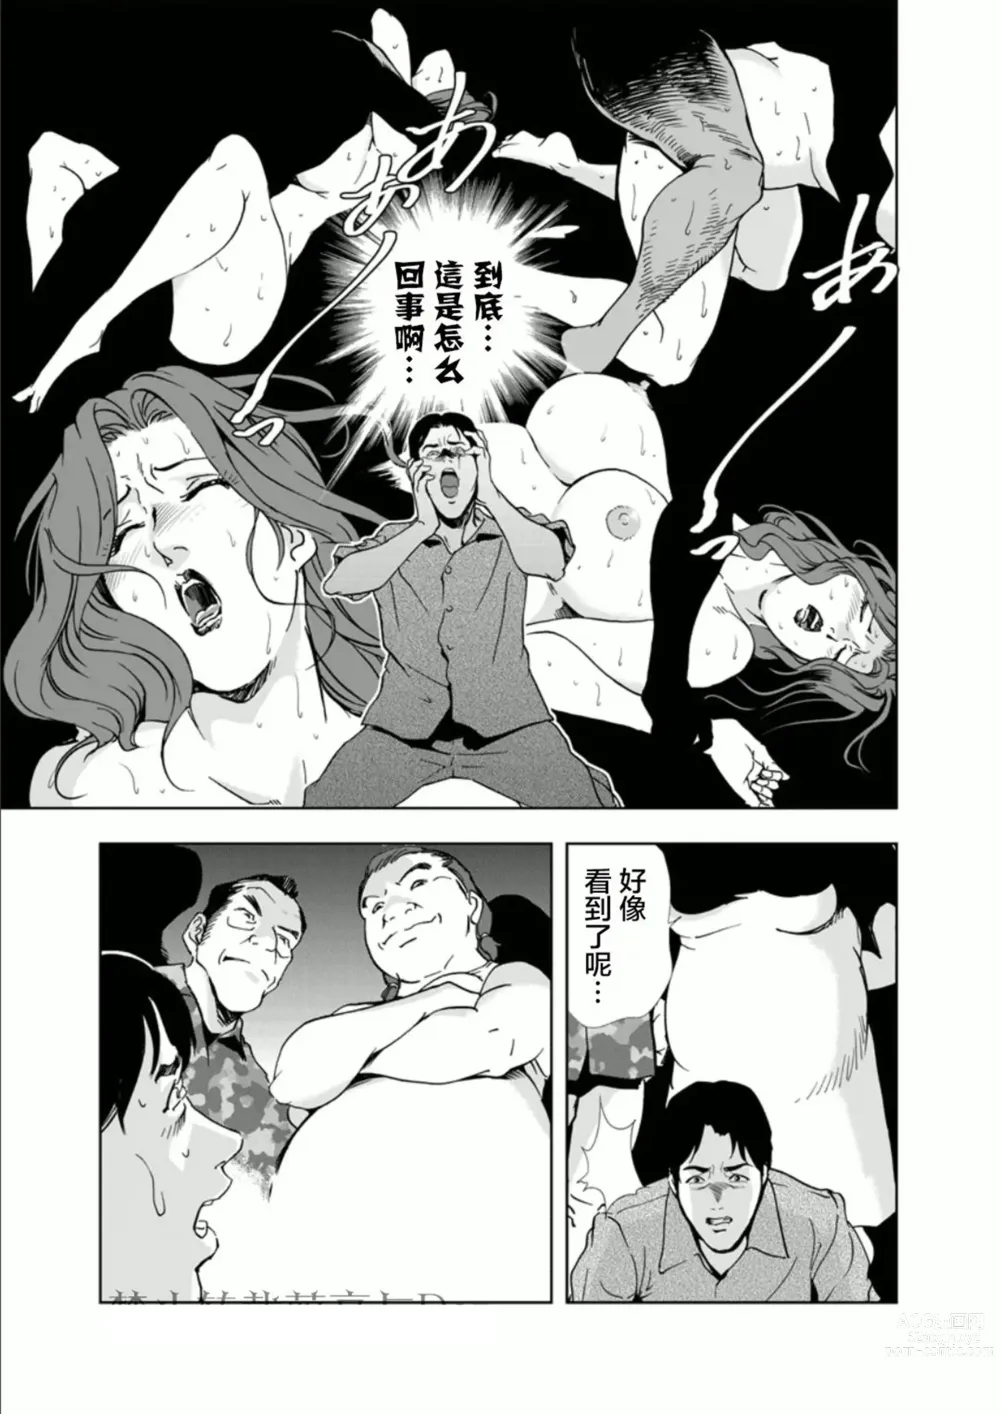 Page 27 of manga Netorare 1